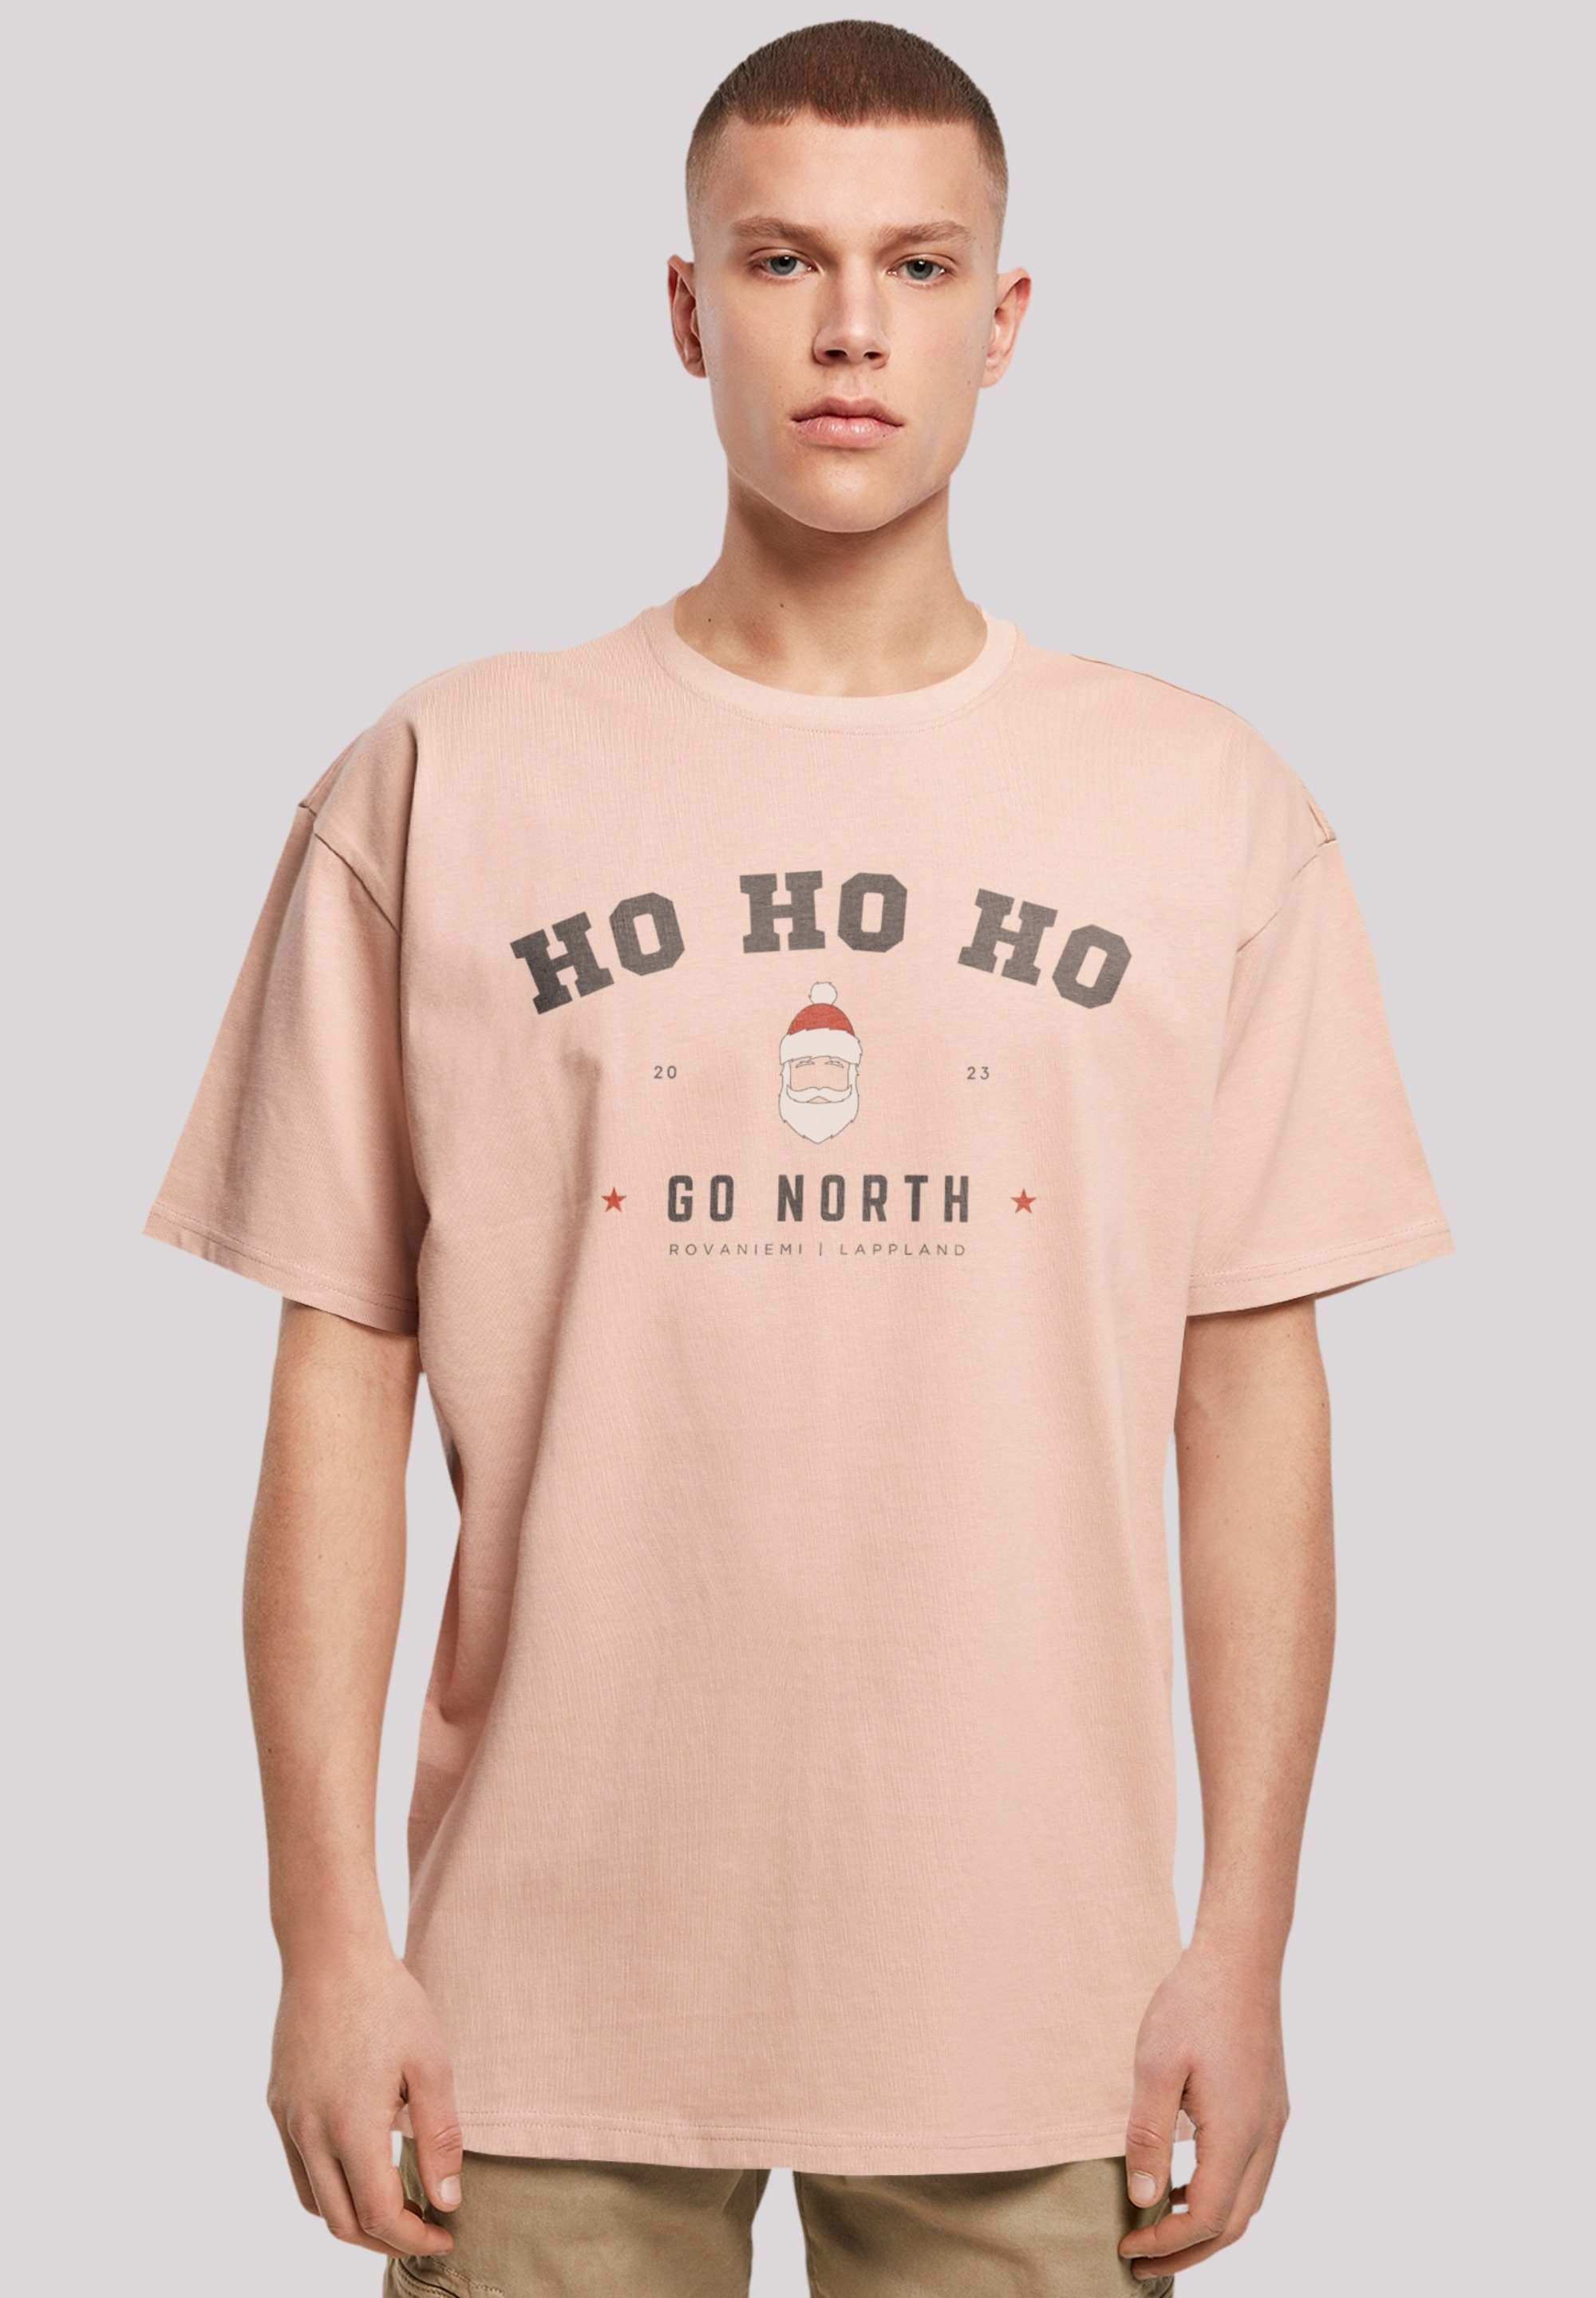 Ho Ho Ho T-Shirt Claus Weihnachten, Logo Geschenk, Santa F4NT4STIC amber Weihnachten